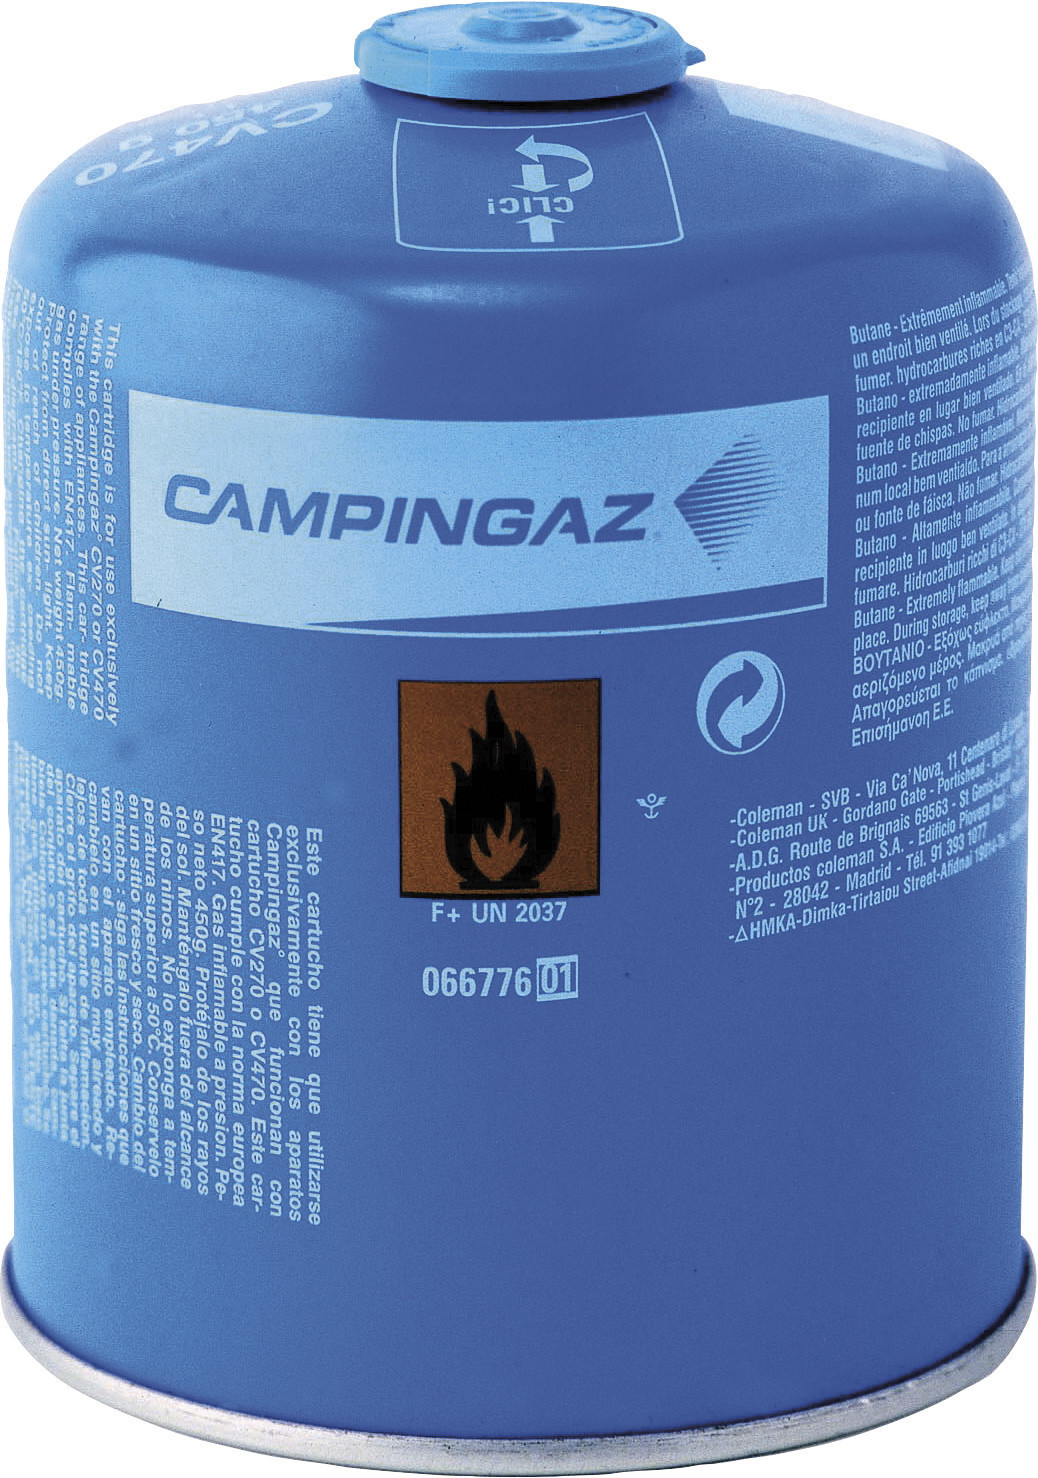 Camping Gaz Gas-cartouche CV 470 Plus 450g 202 742